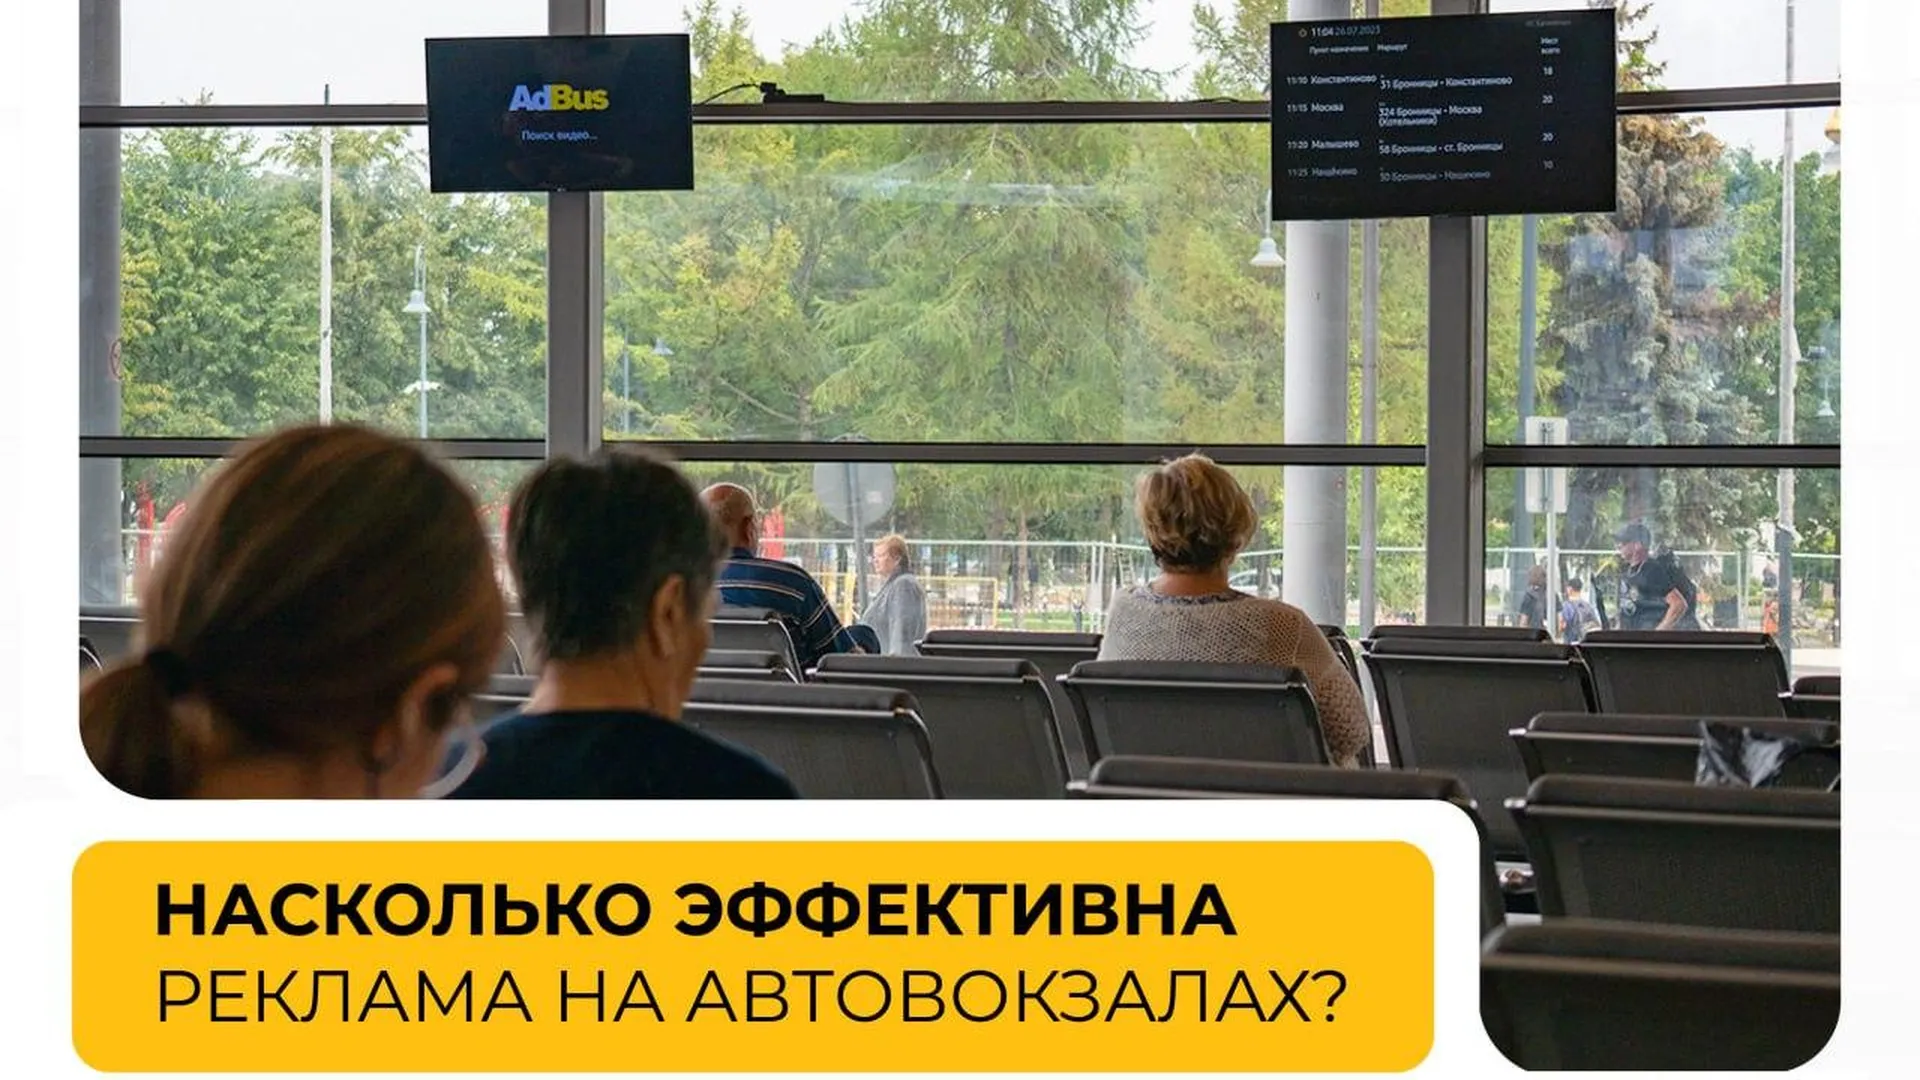 Стало известно, насколько эффективна реклама на автовокзалах в Подмосковье